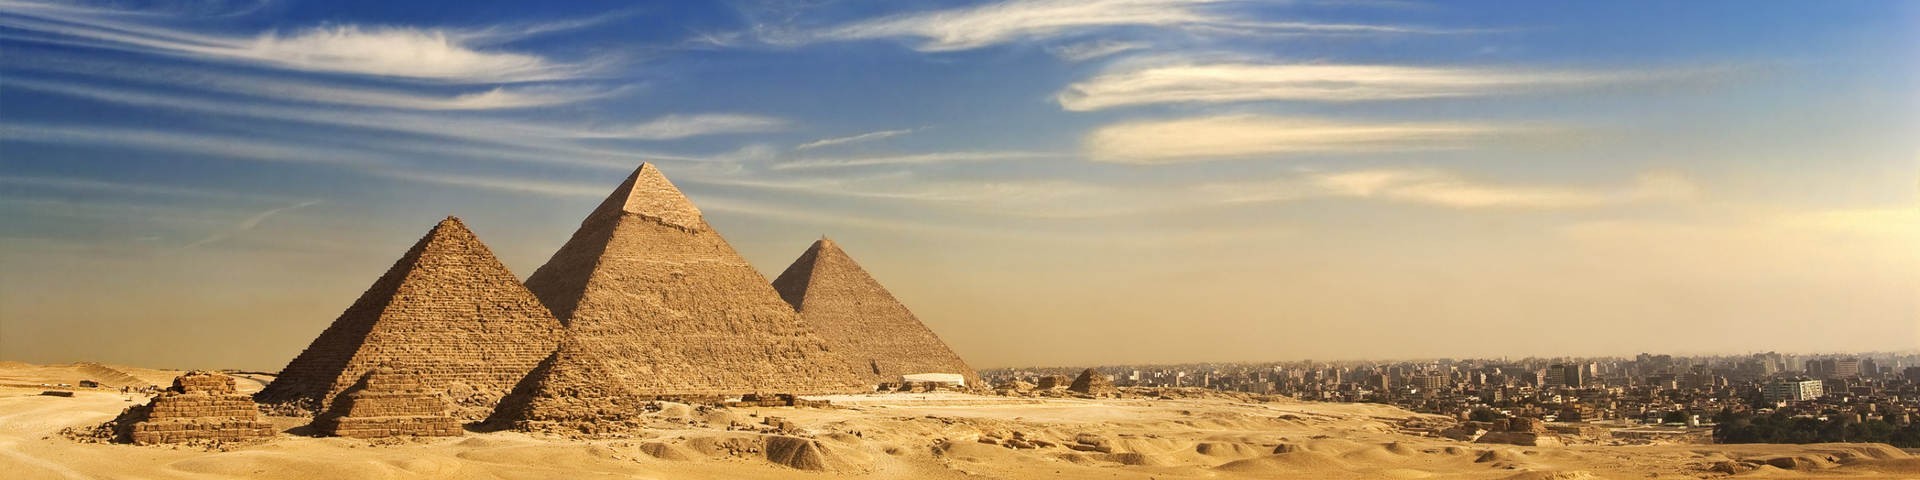 Cidade do Cairo - a capital do Egito | Viagem para o Egito